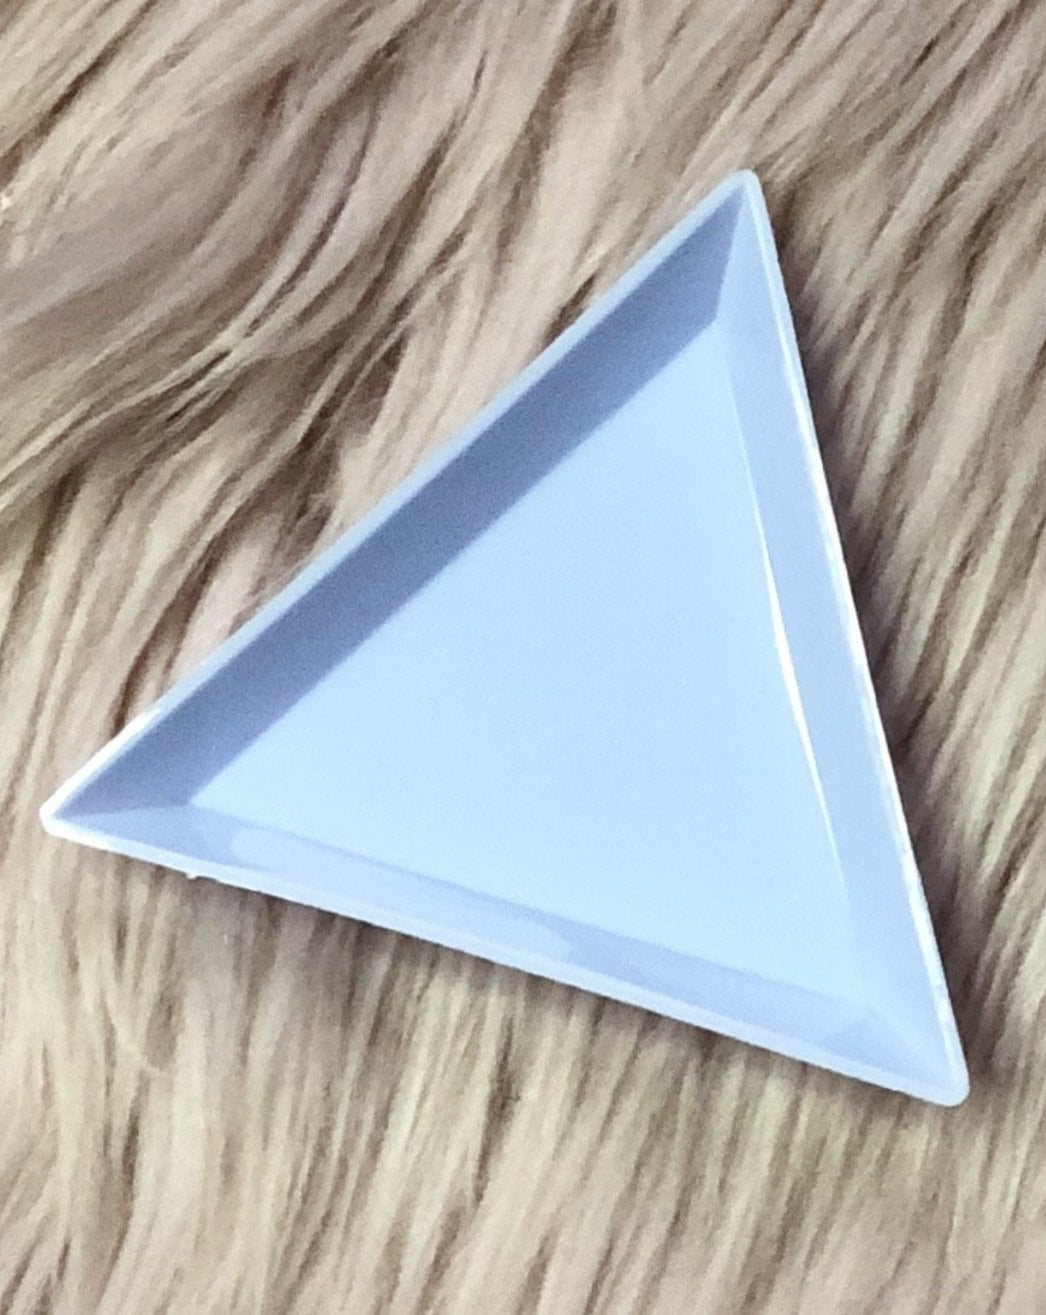 Triangle Tray